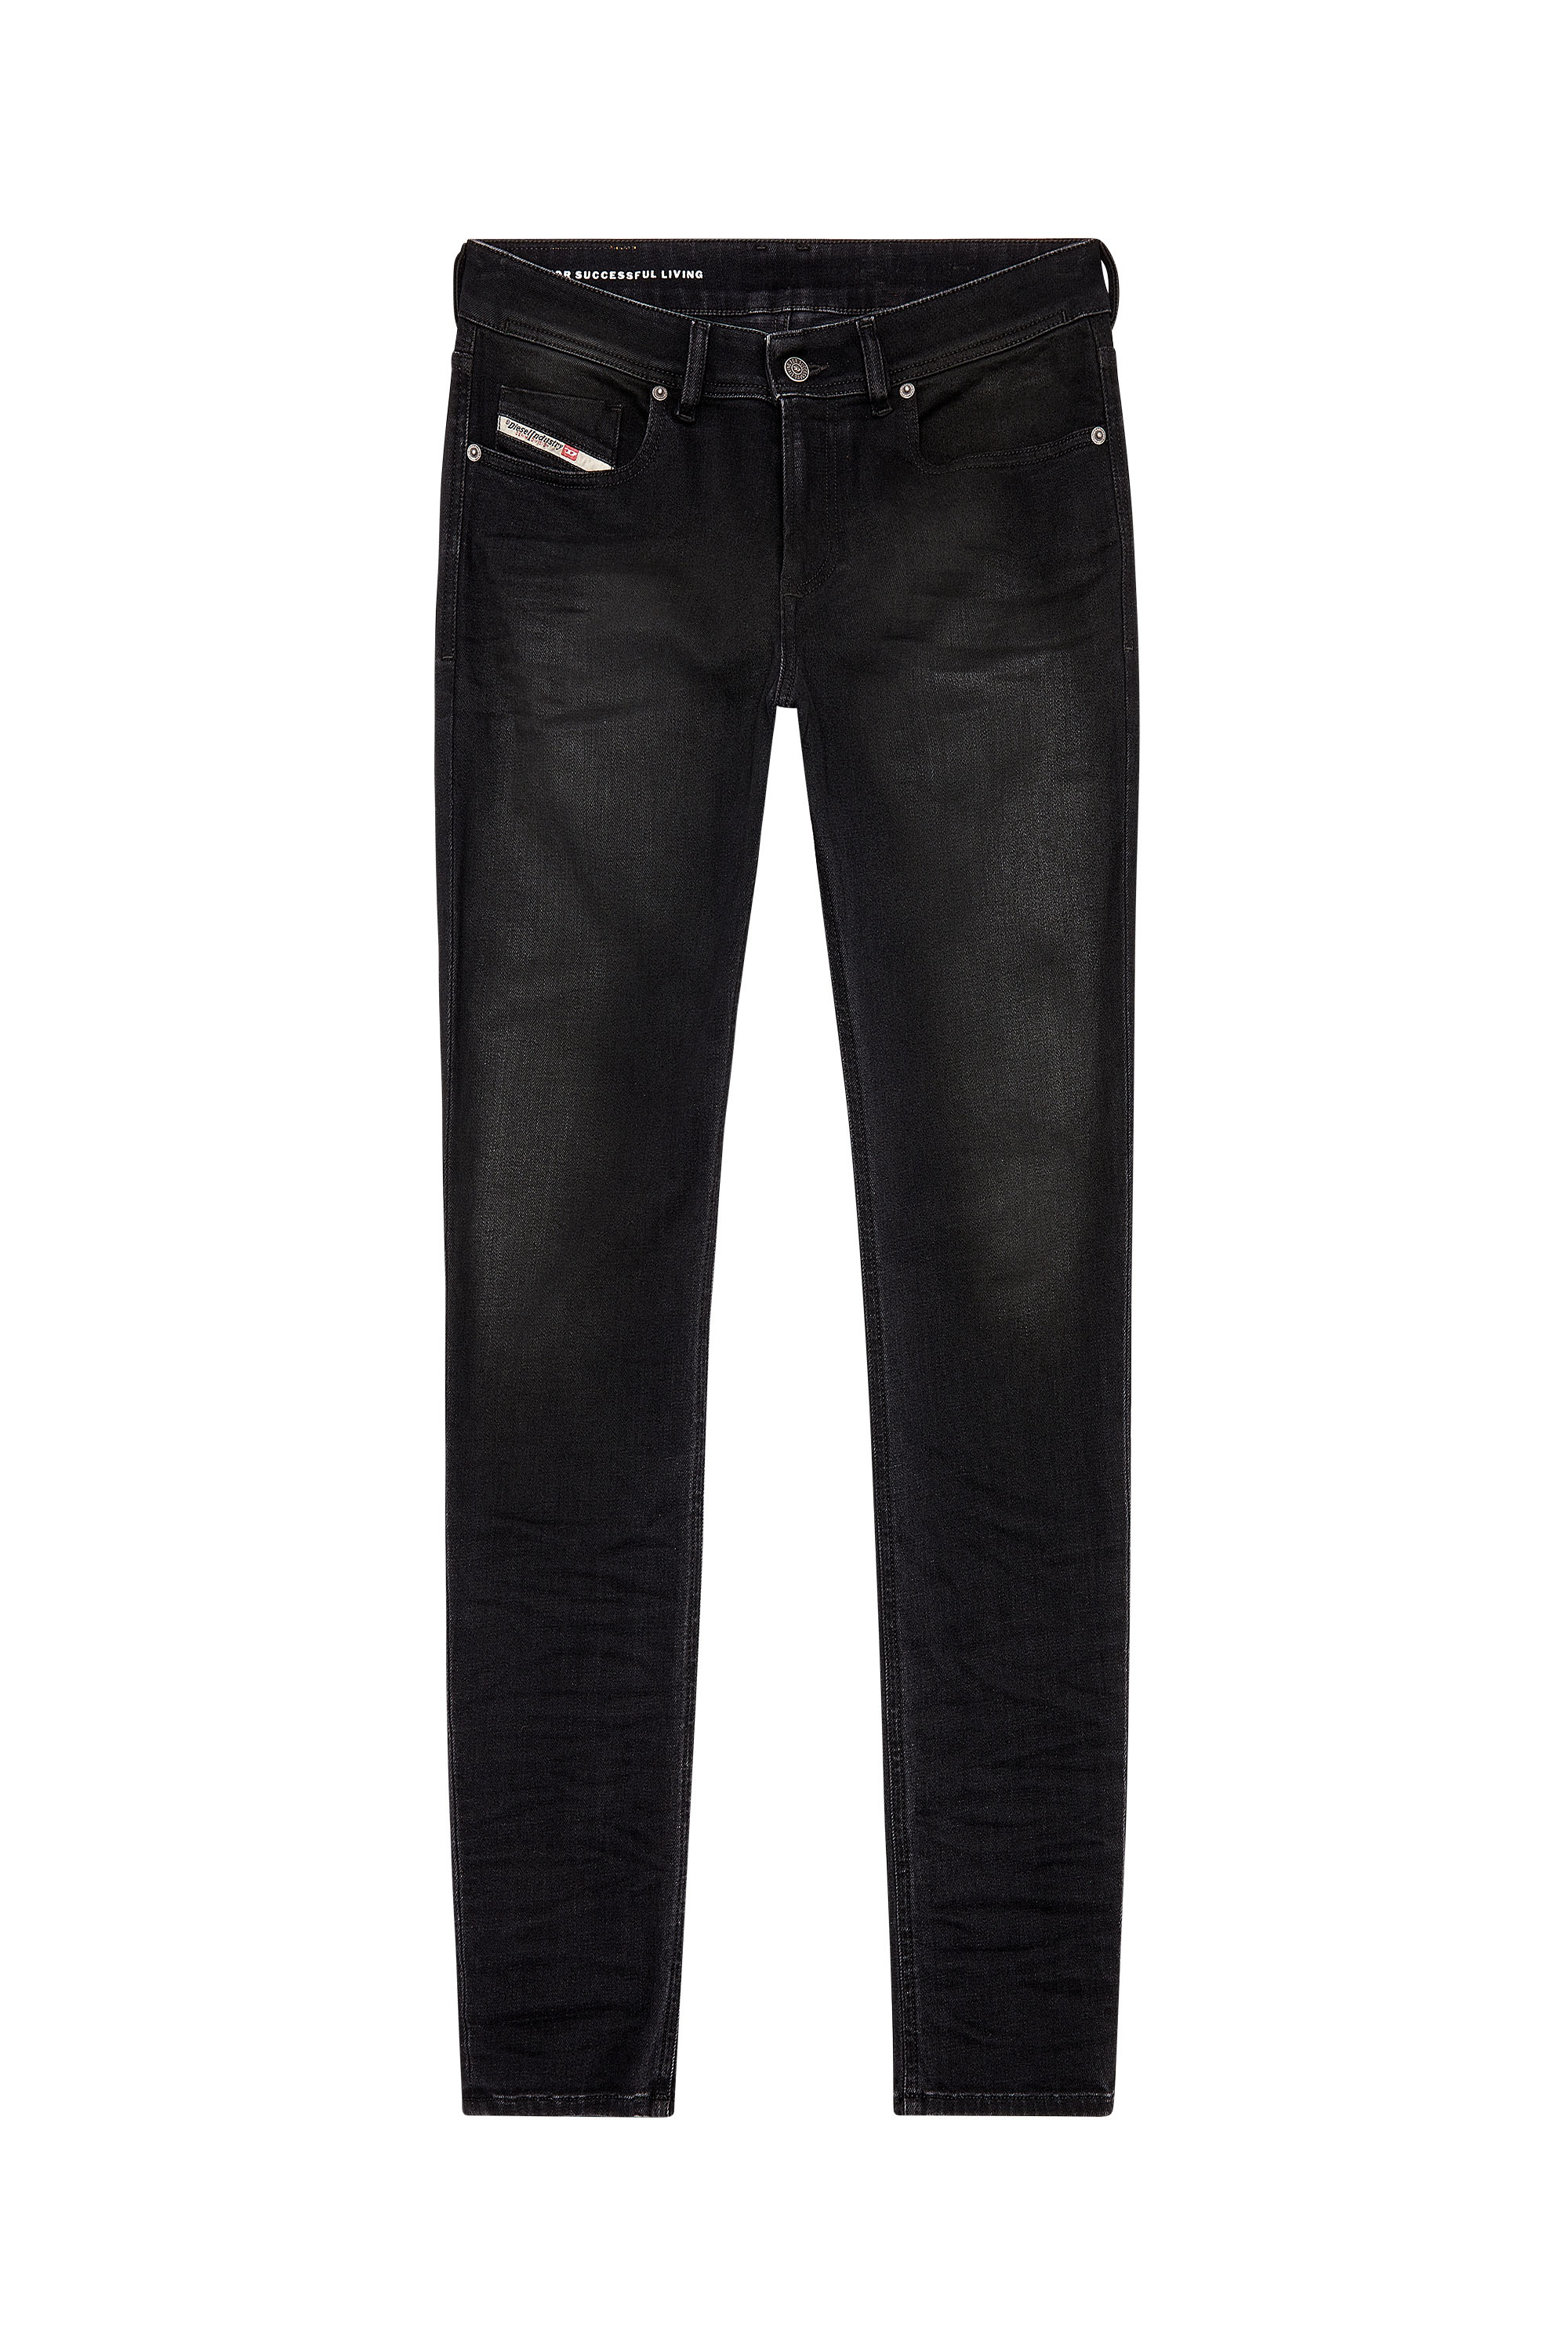 Diesel - Skinny Jeans 1979 Sleenker 09H94, Black/Dark grey - Image 5